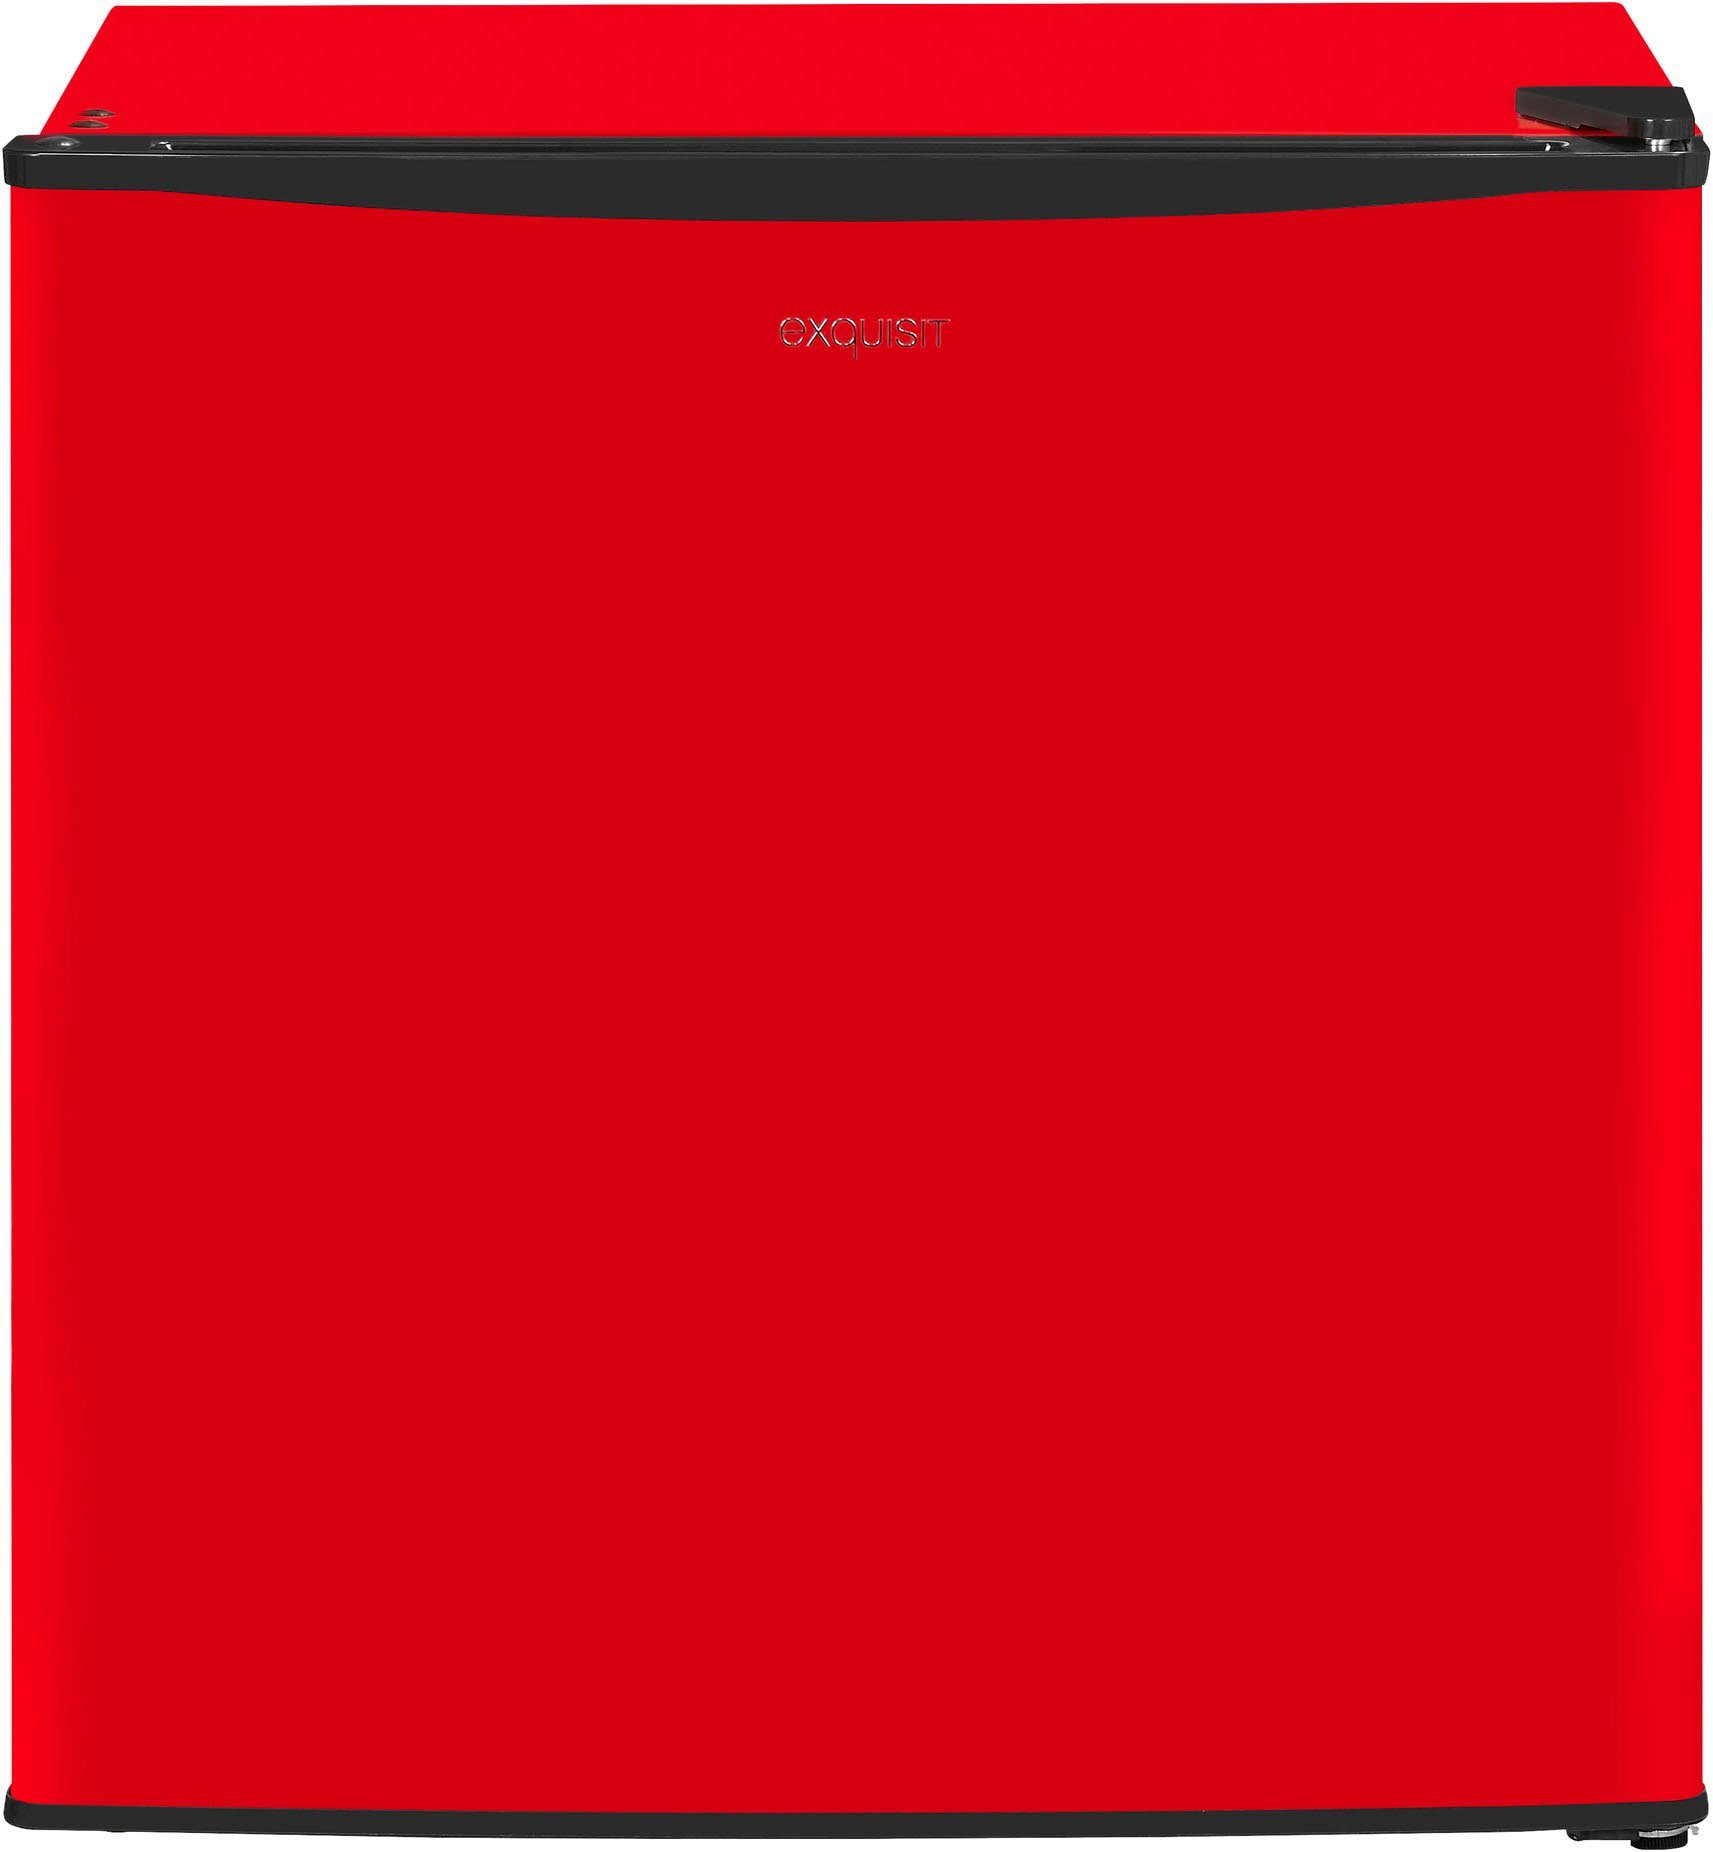 exquisit Gefrierschrank GB40-150E rot, 51 cm hoch, 47 cm breit | Tiefkühlschränke